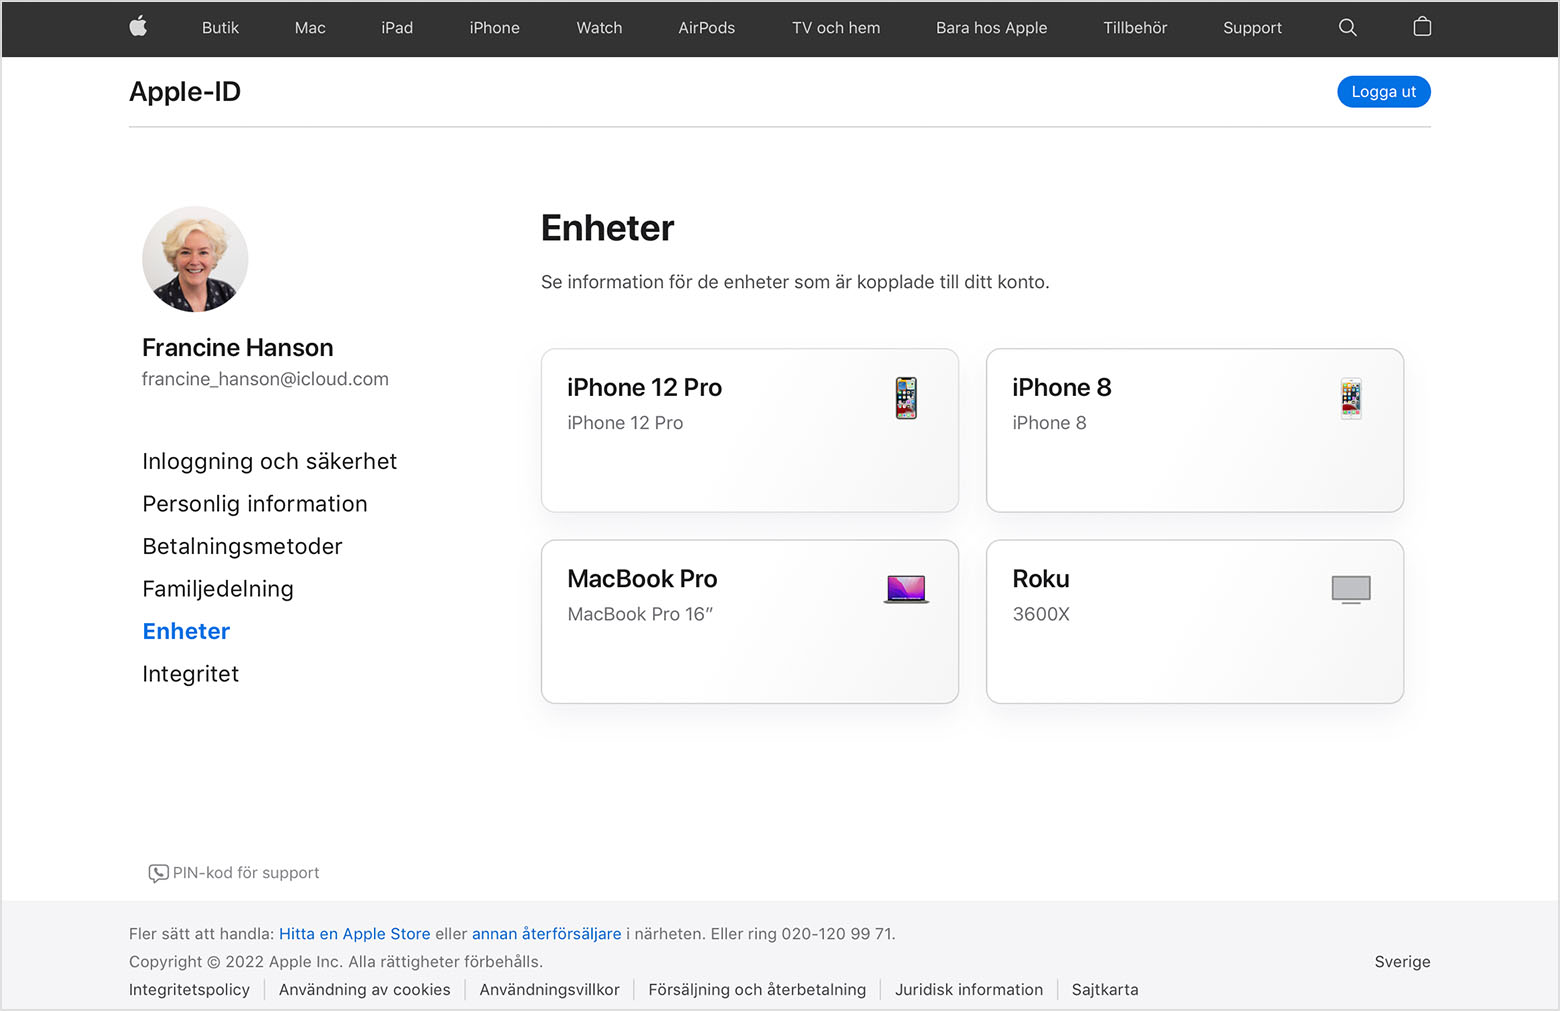 En bild av appleid.apple.com som visar tre enheter för Francine Hanson: en iPhone 12 Pro, en MacBook Pro och en Roku.